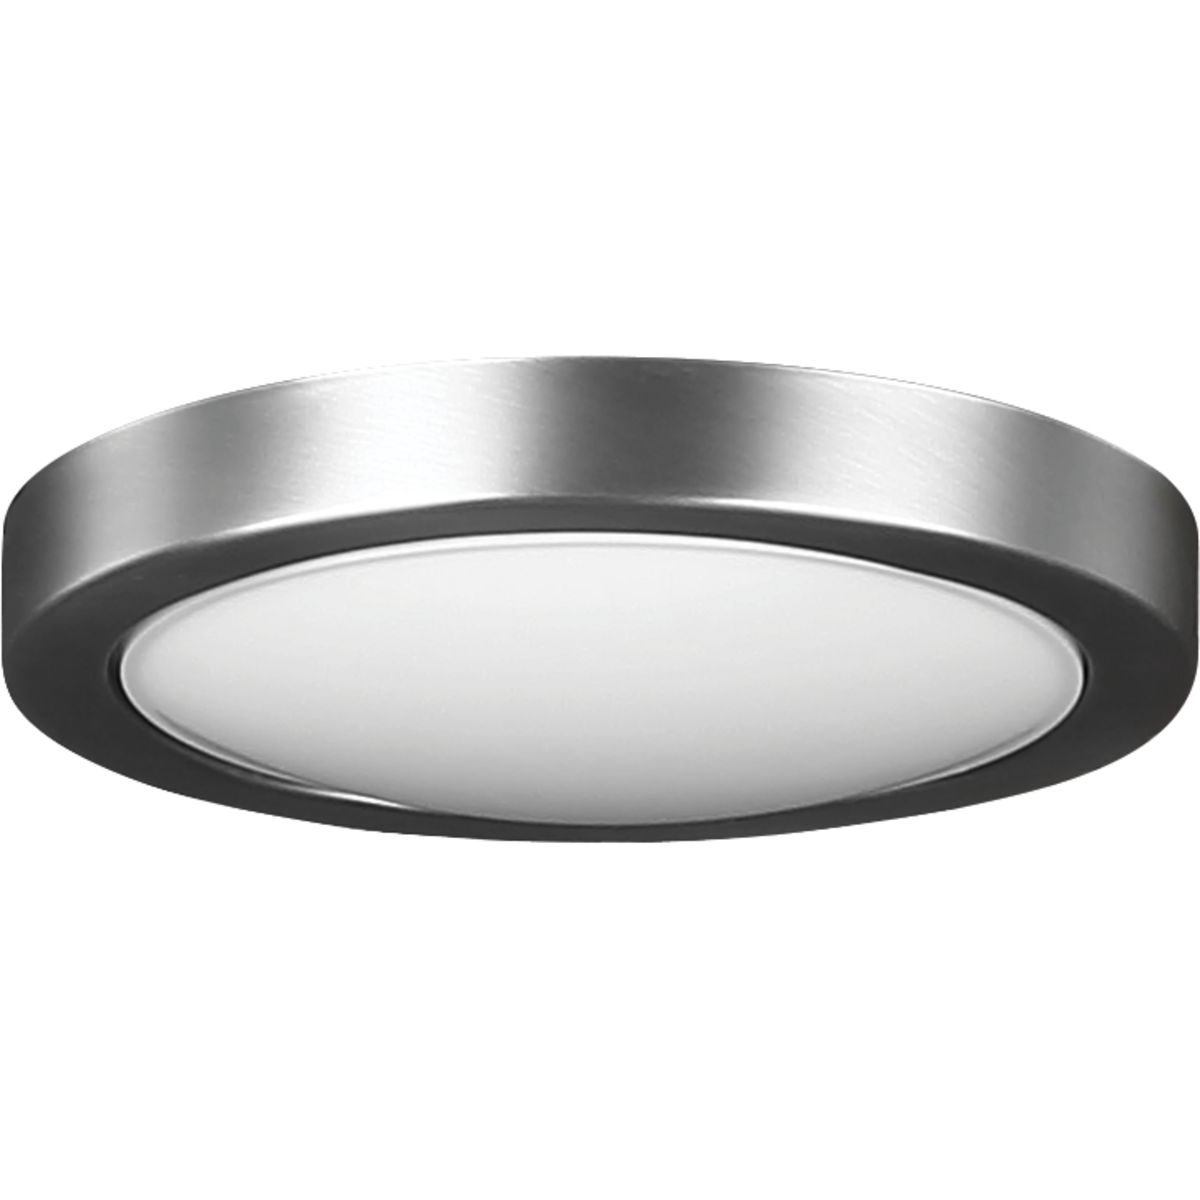 Lindale Ceiling Fan Light Kit P2669 8130k Progress Lighting